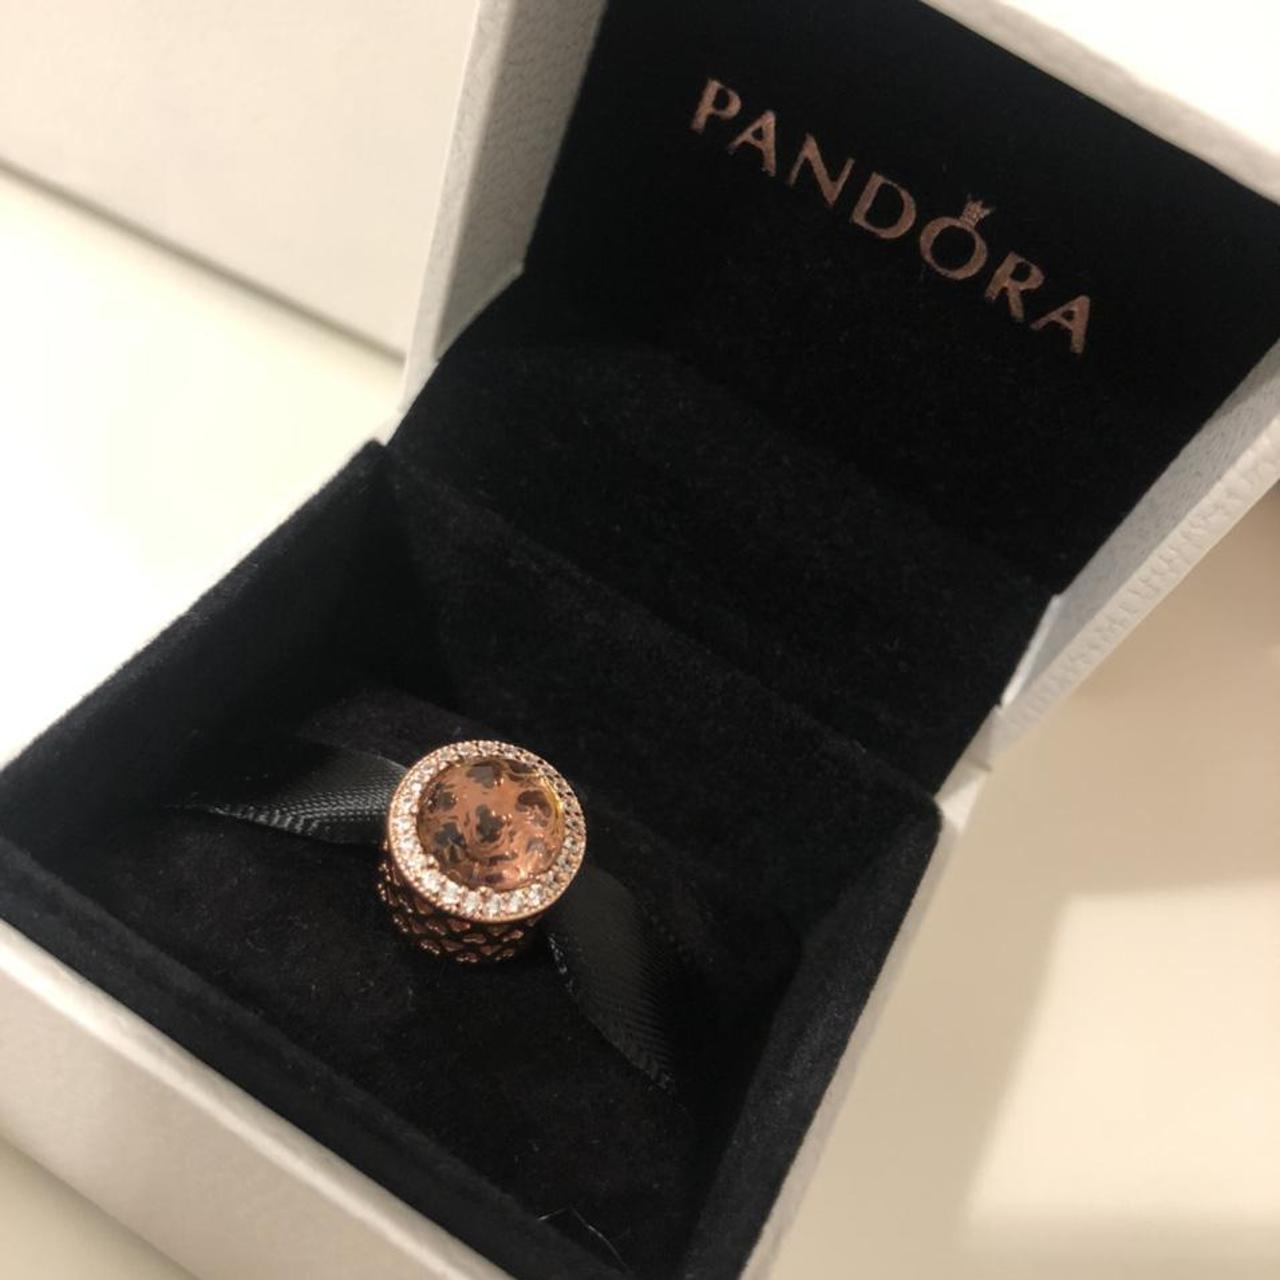 Product Image 4 - Pandora rose gold blush pink